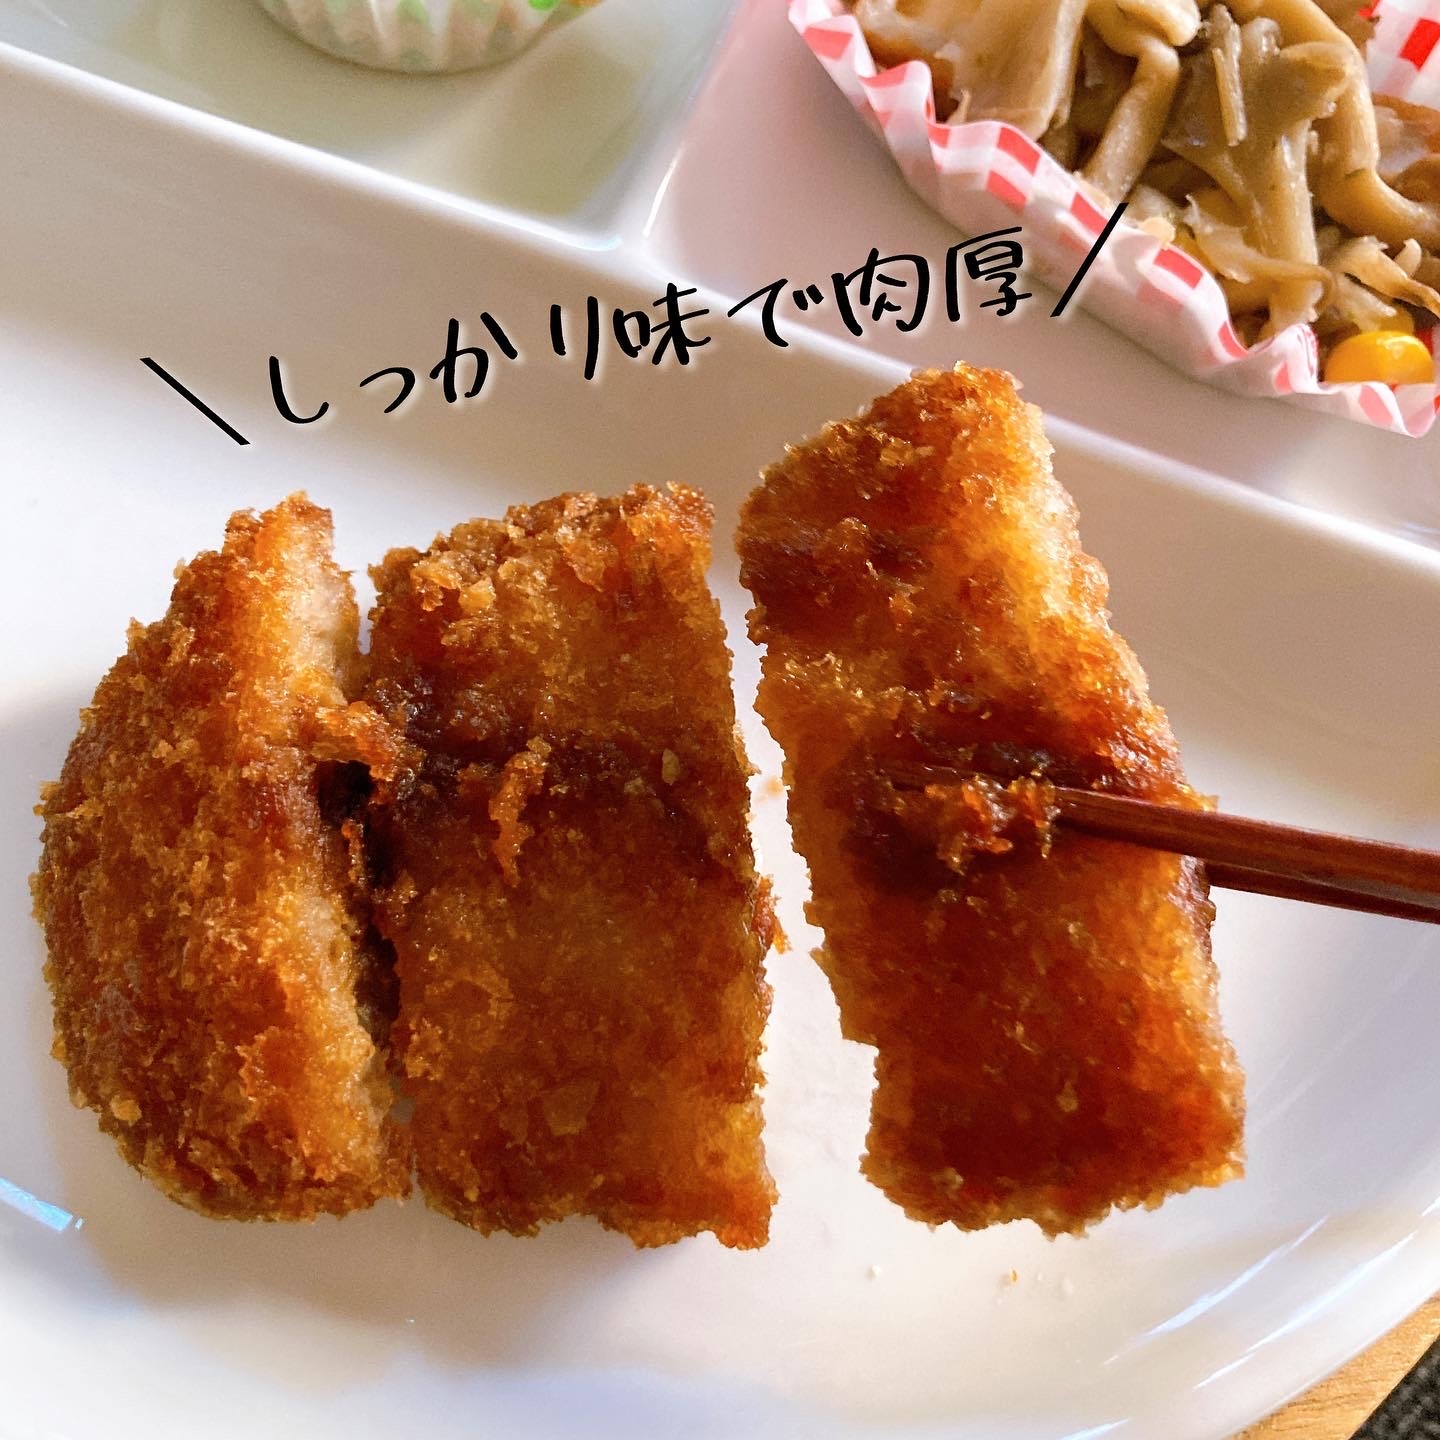 三嶋商事 みしまの御膳みやび とんかつの良い点・メリットに関するメグさんの口コミ画像3